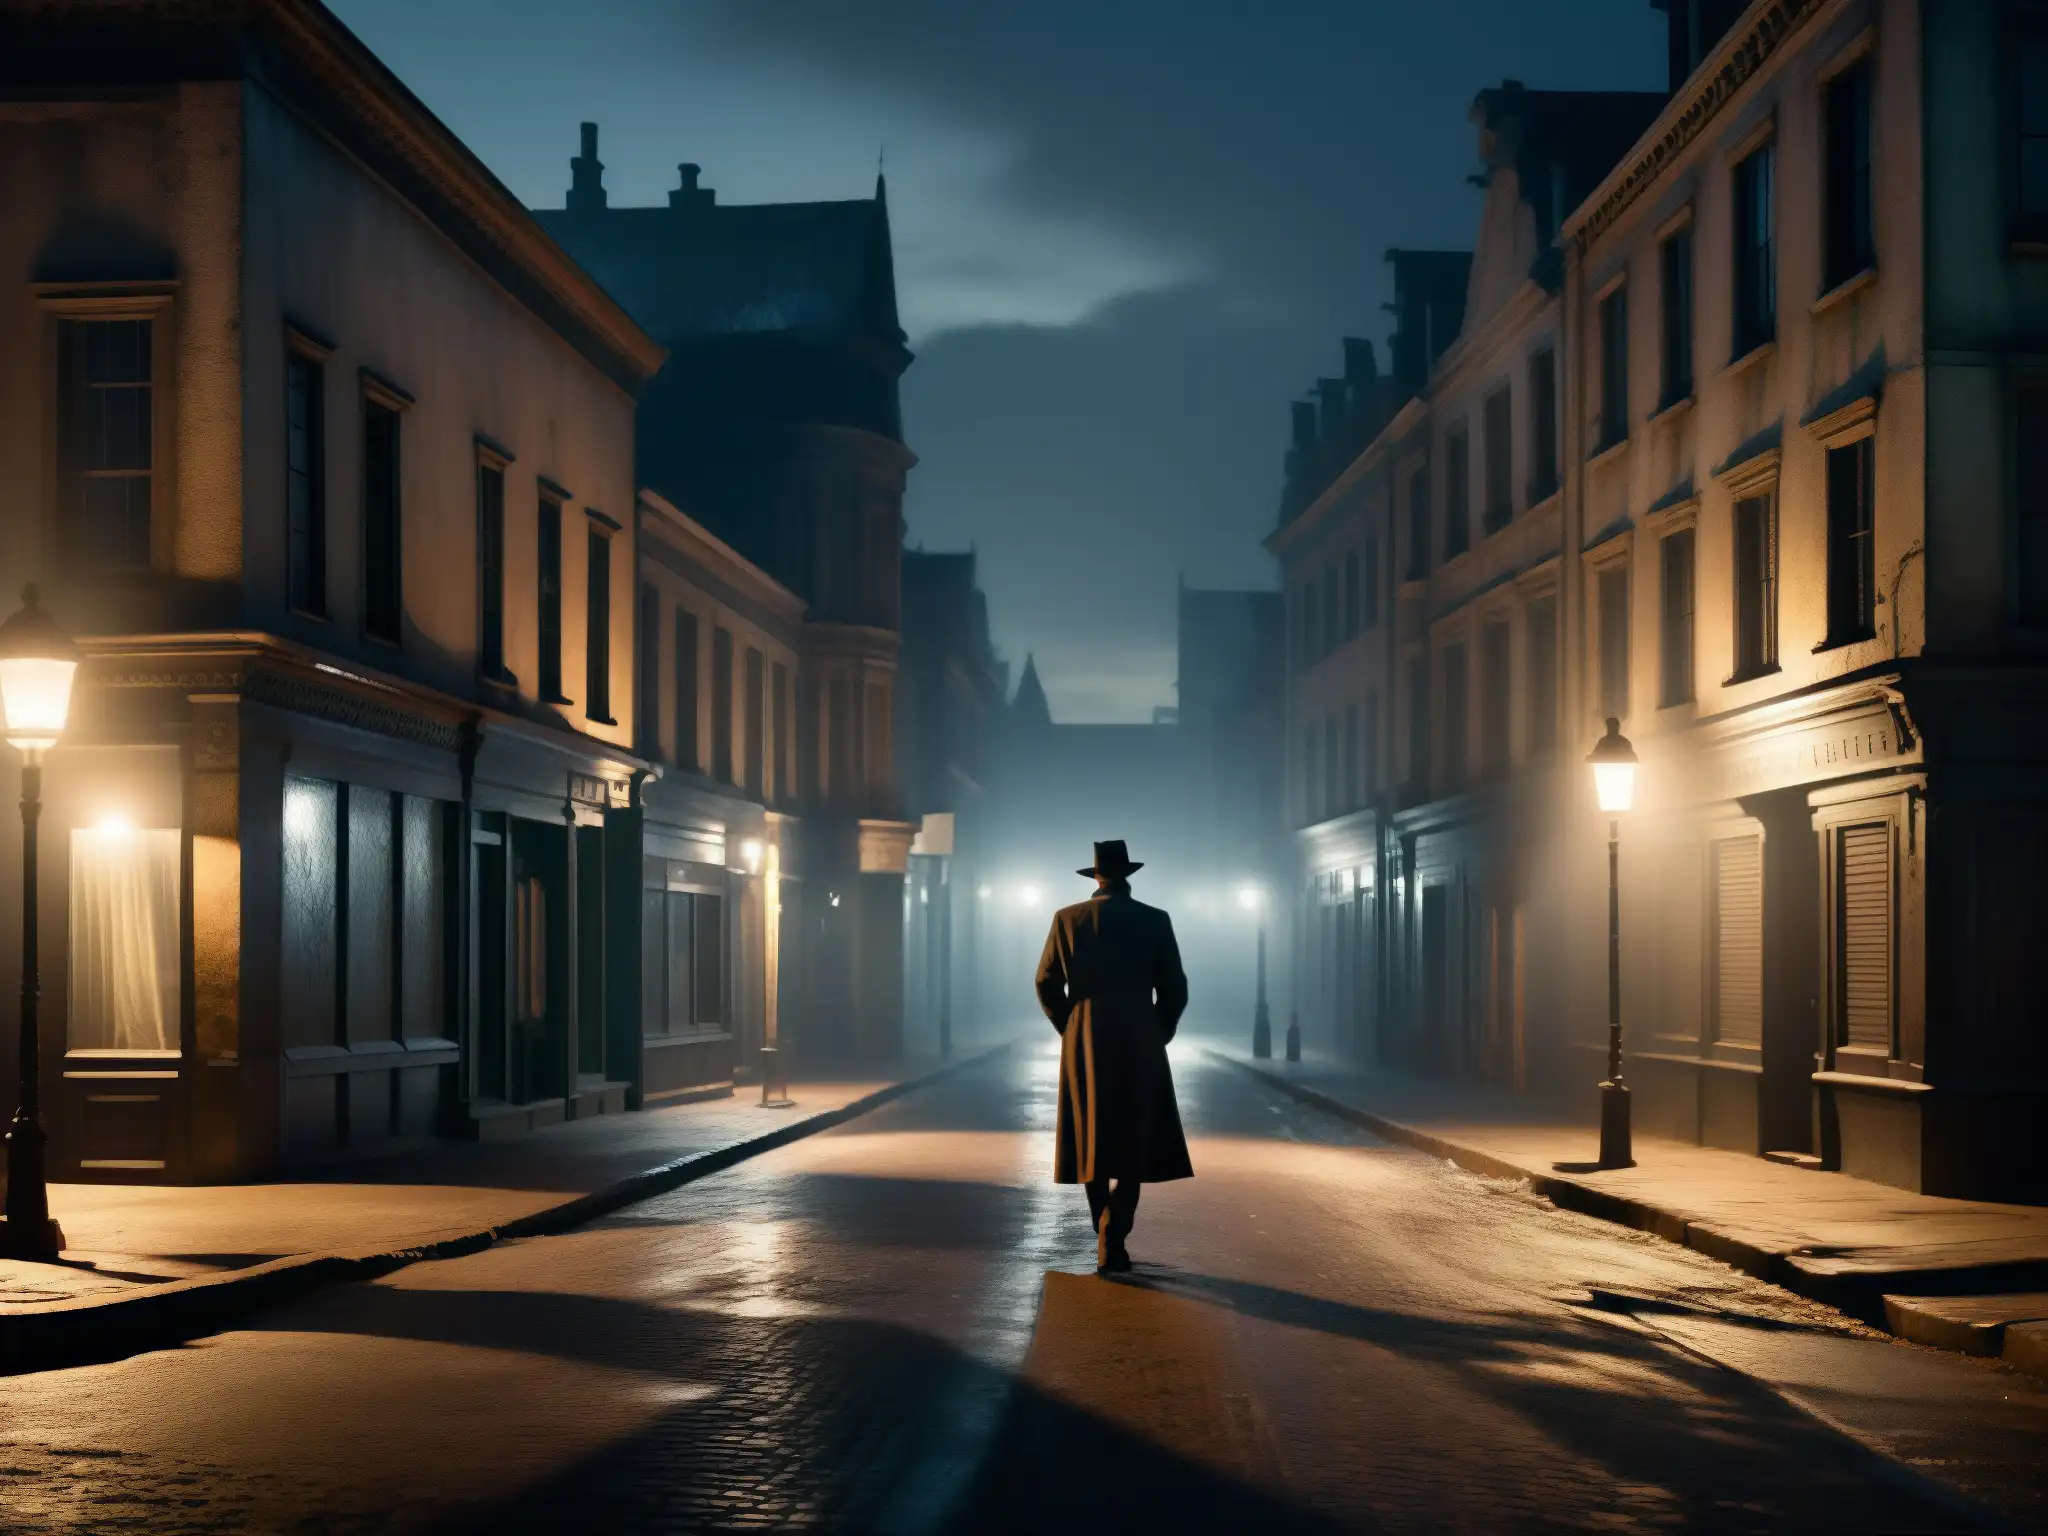 Una calle neblinosa y iluminada por la luna, con edificios antiguos y un misterioso personaje en la distancia, que potencia leyendas urbanas